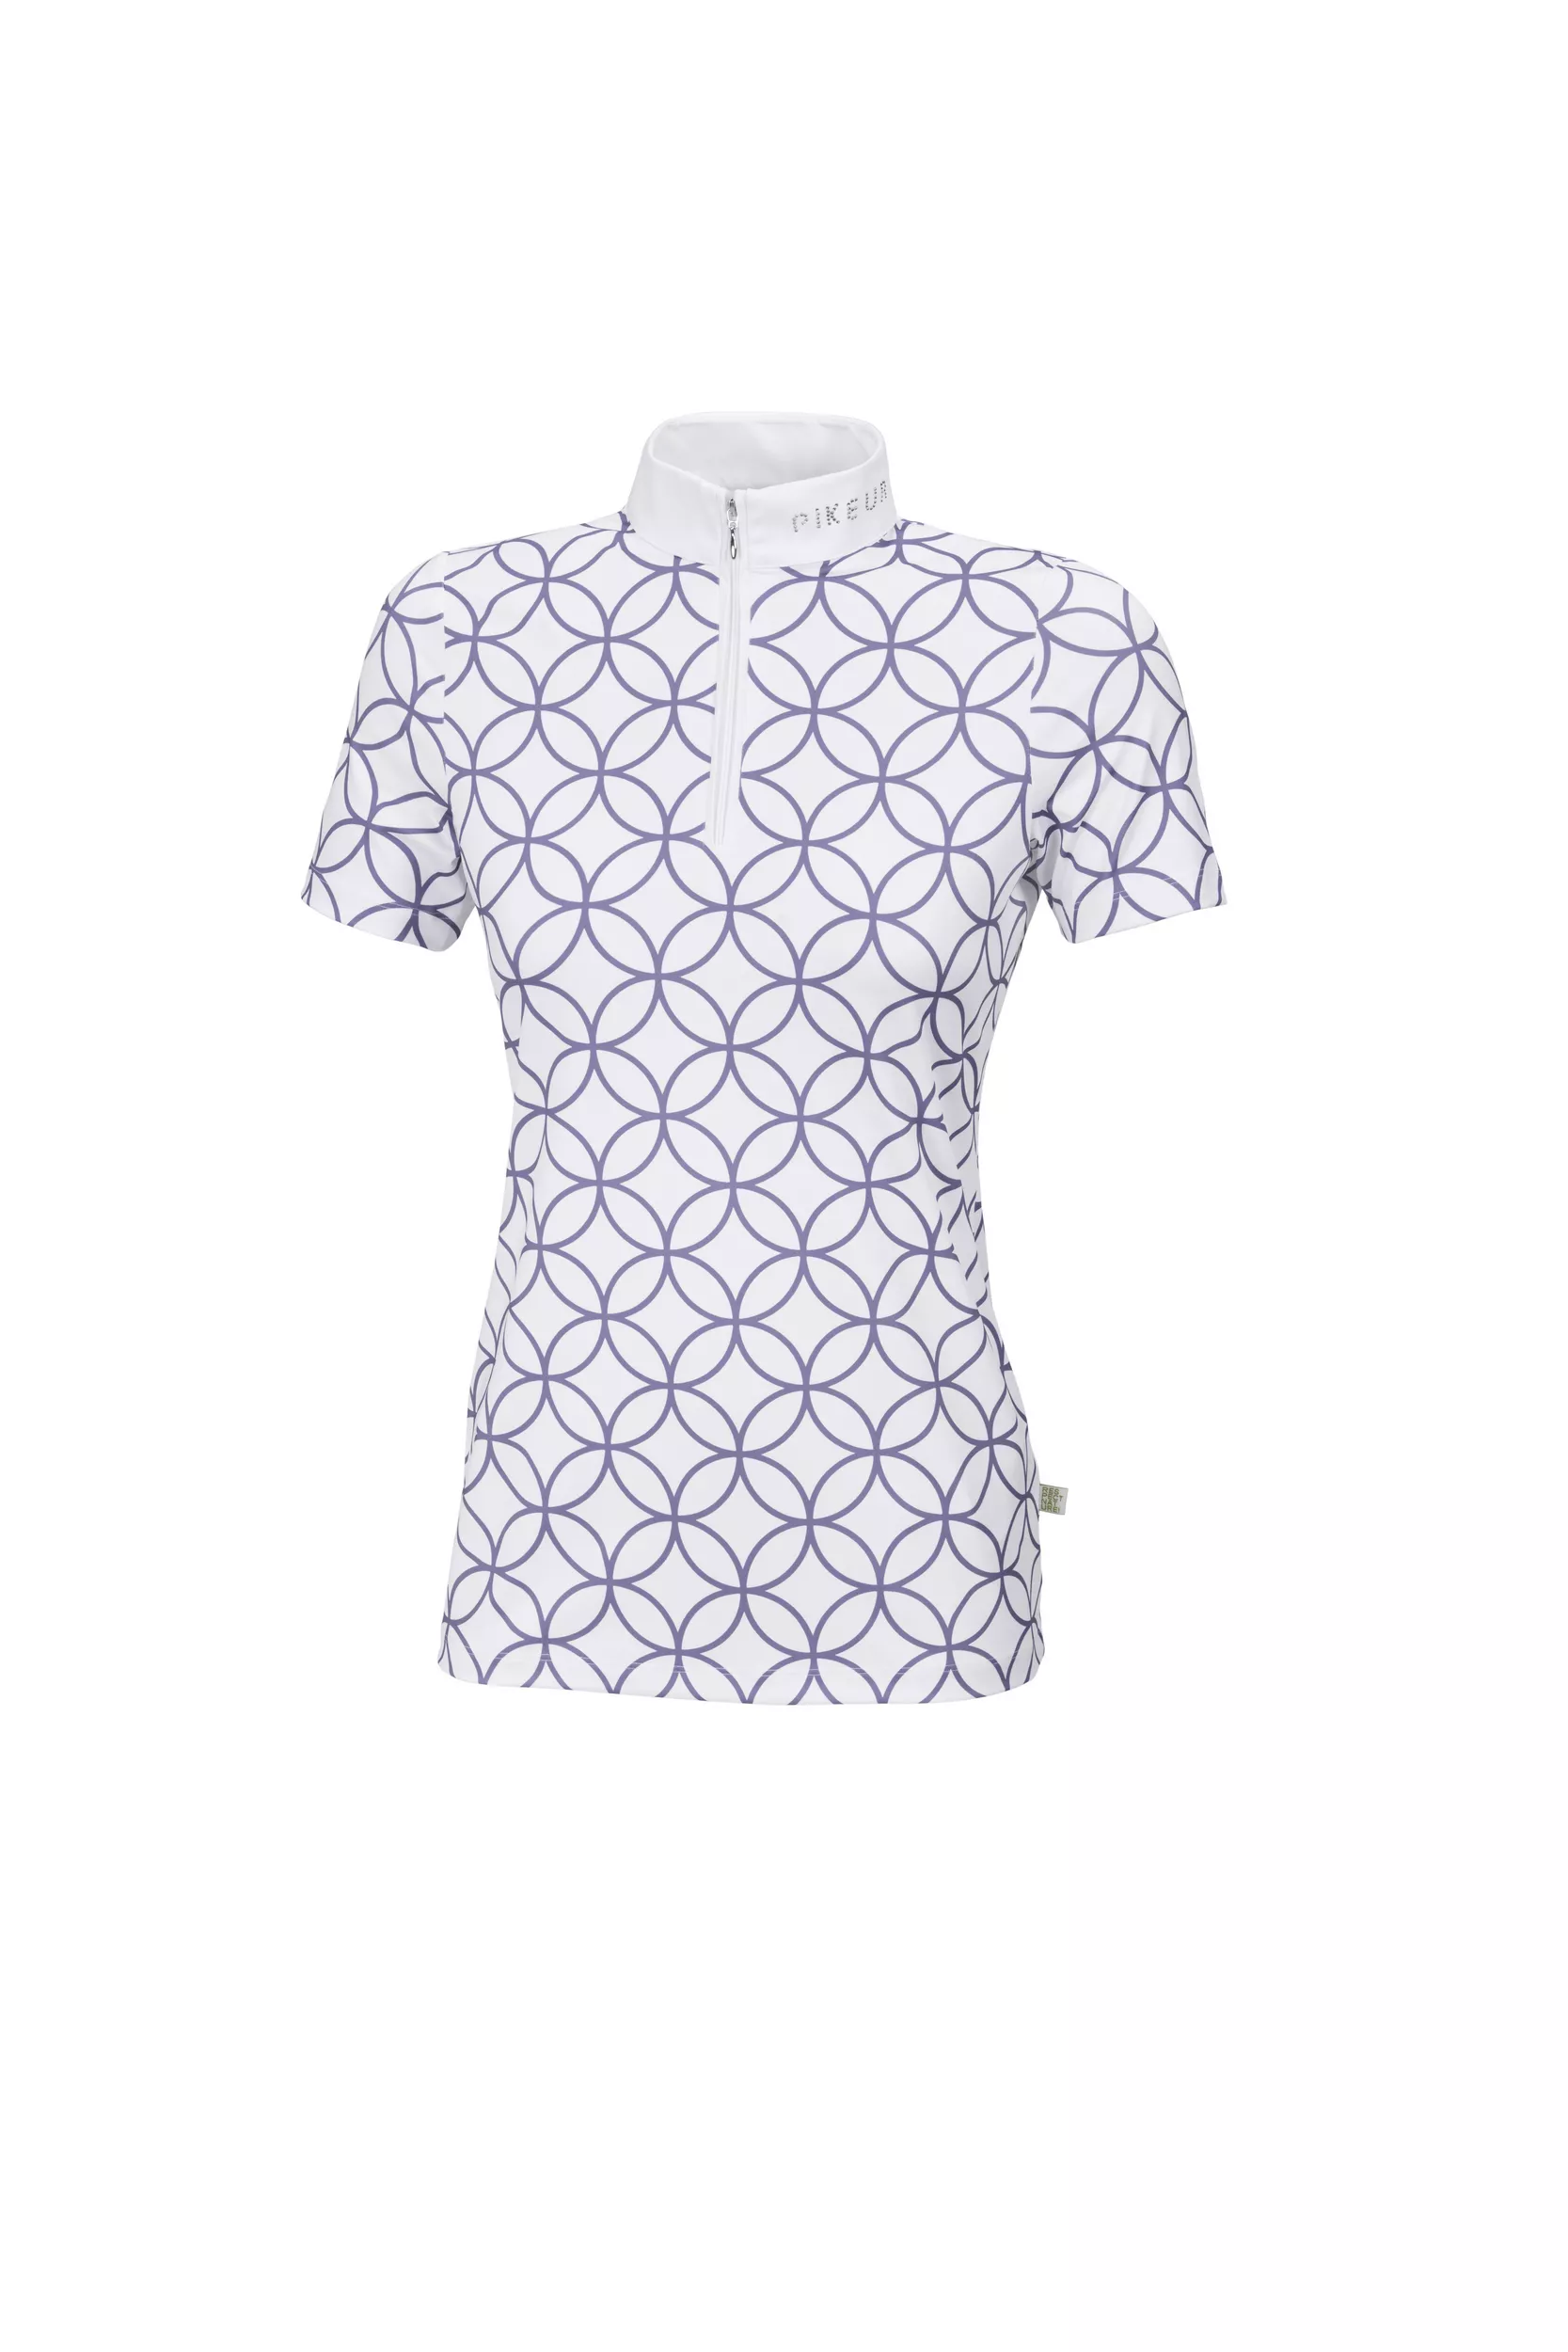 Camisa de competición para mujer Marou, Sportswear 22, blanco/violeta plateado